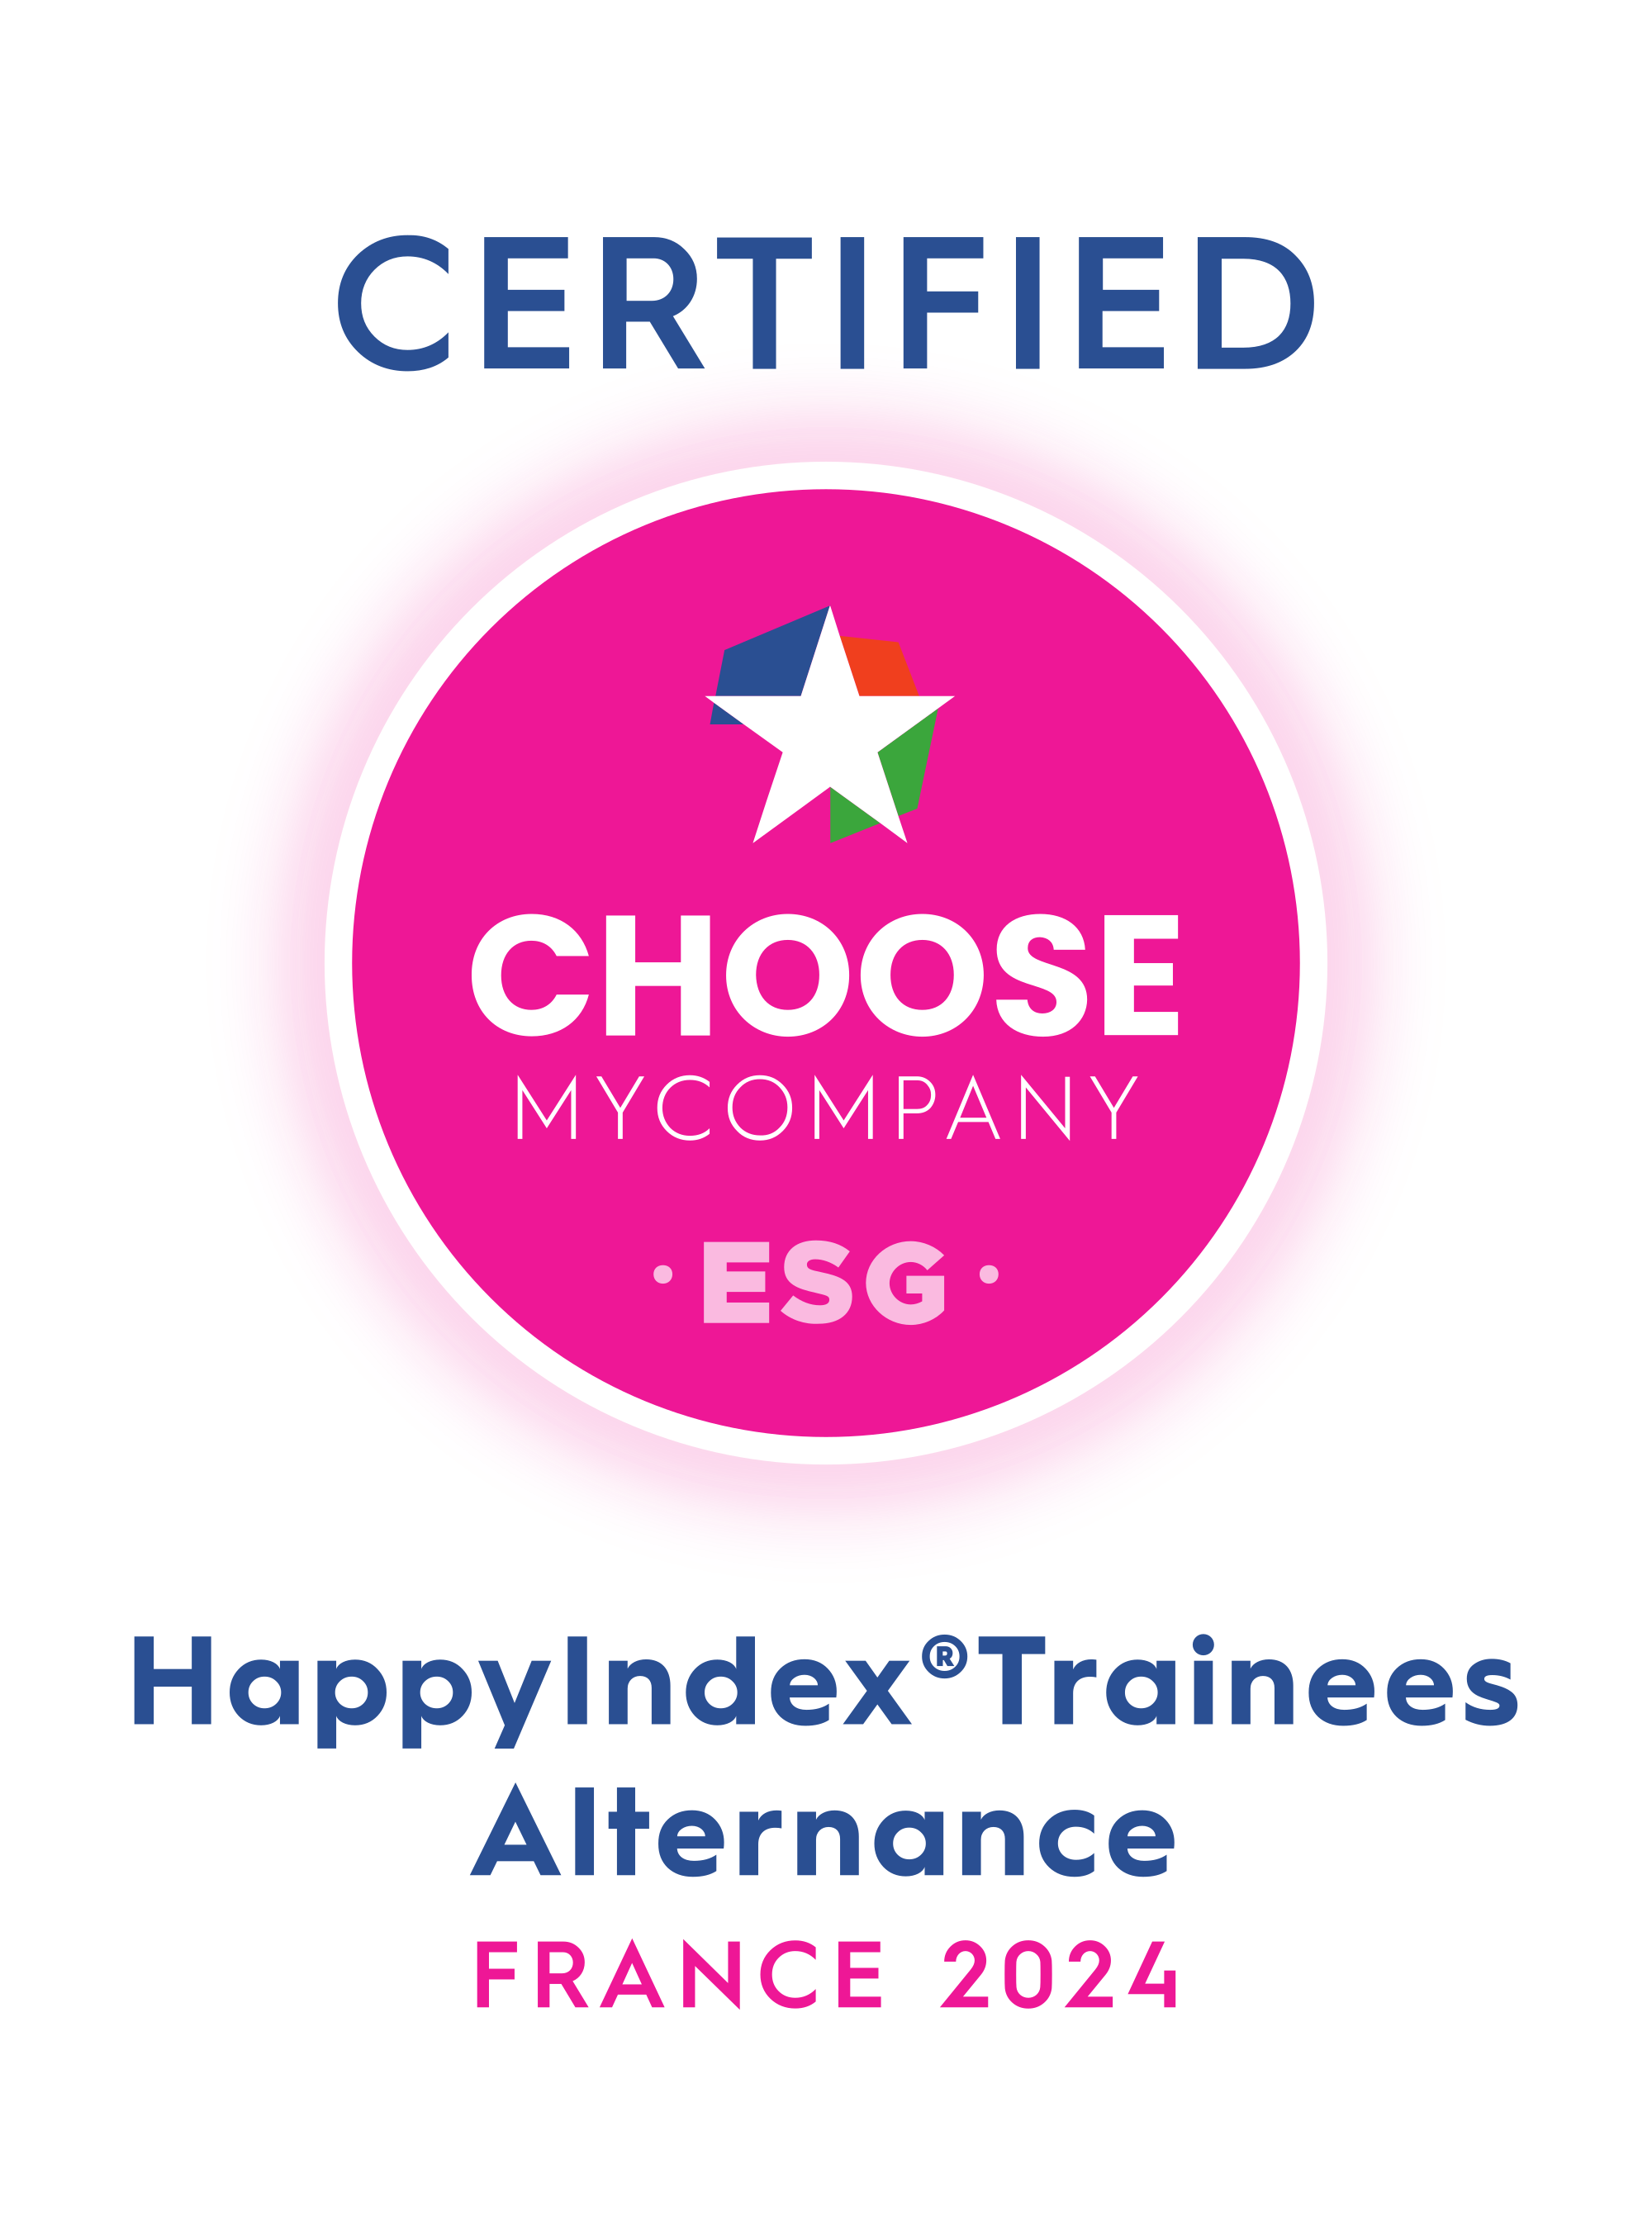 Happy Trainees index